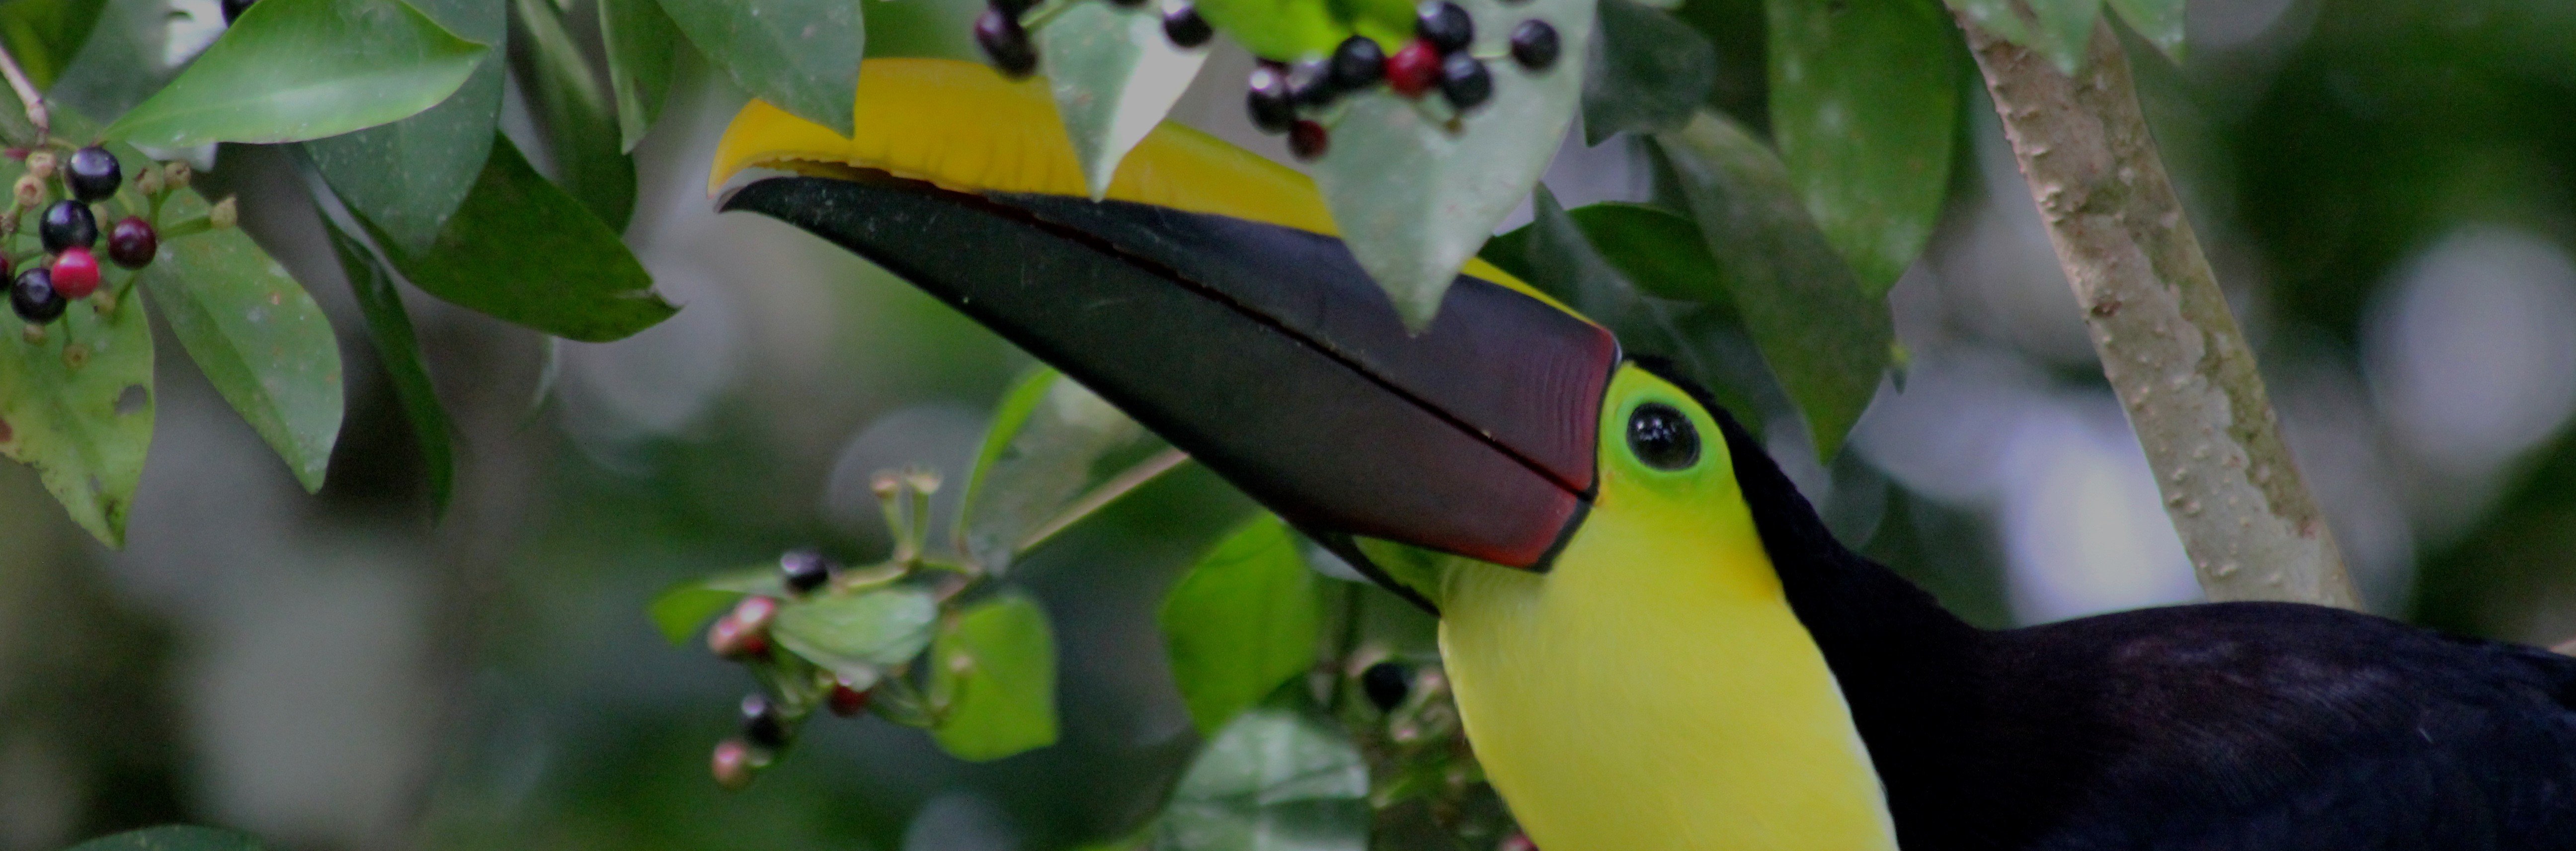 Close up shot of Toucan bird